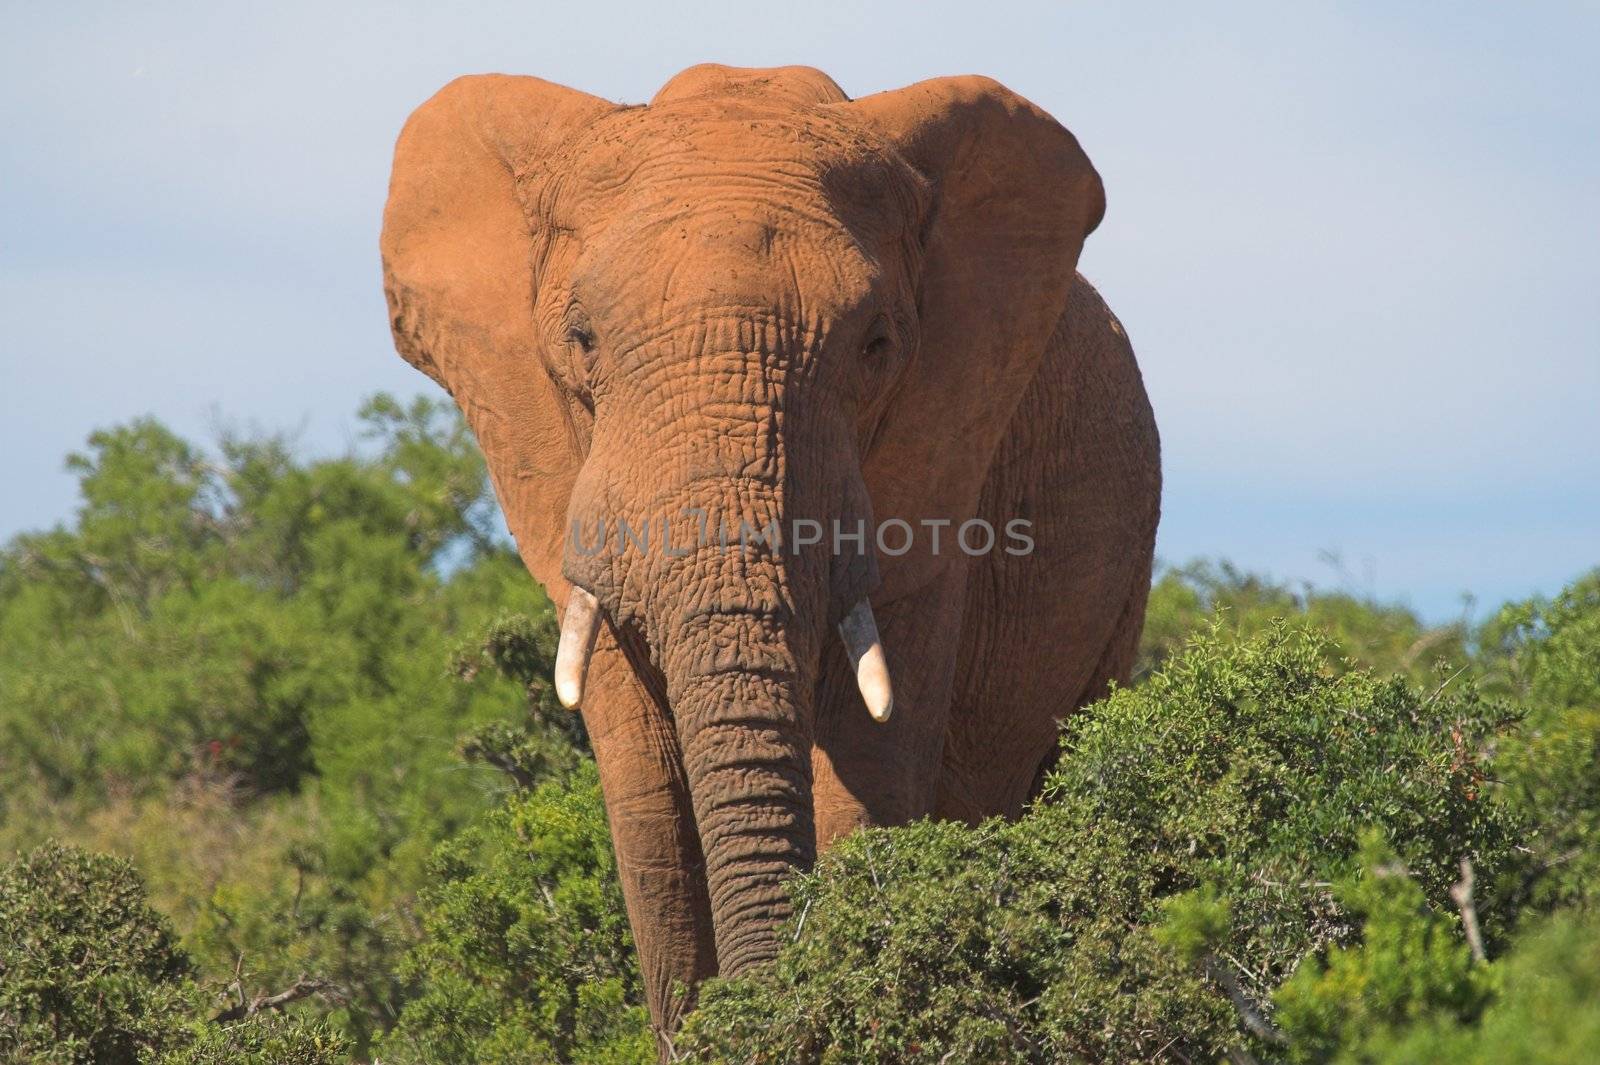 Elephant by nightowlza